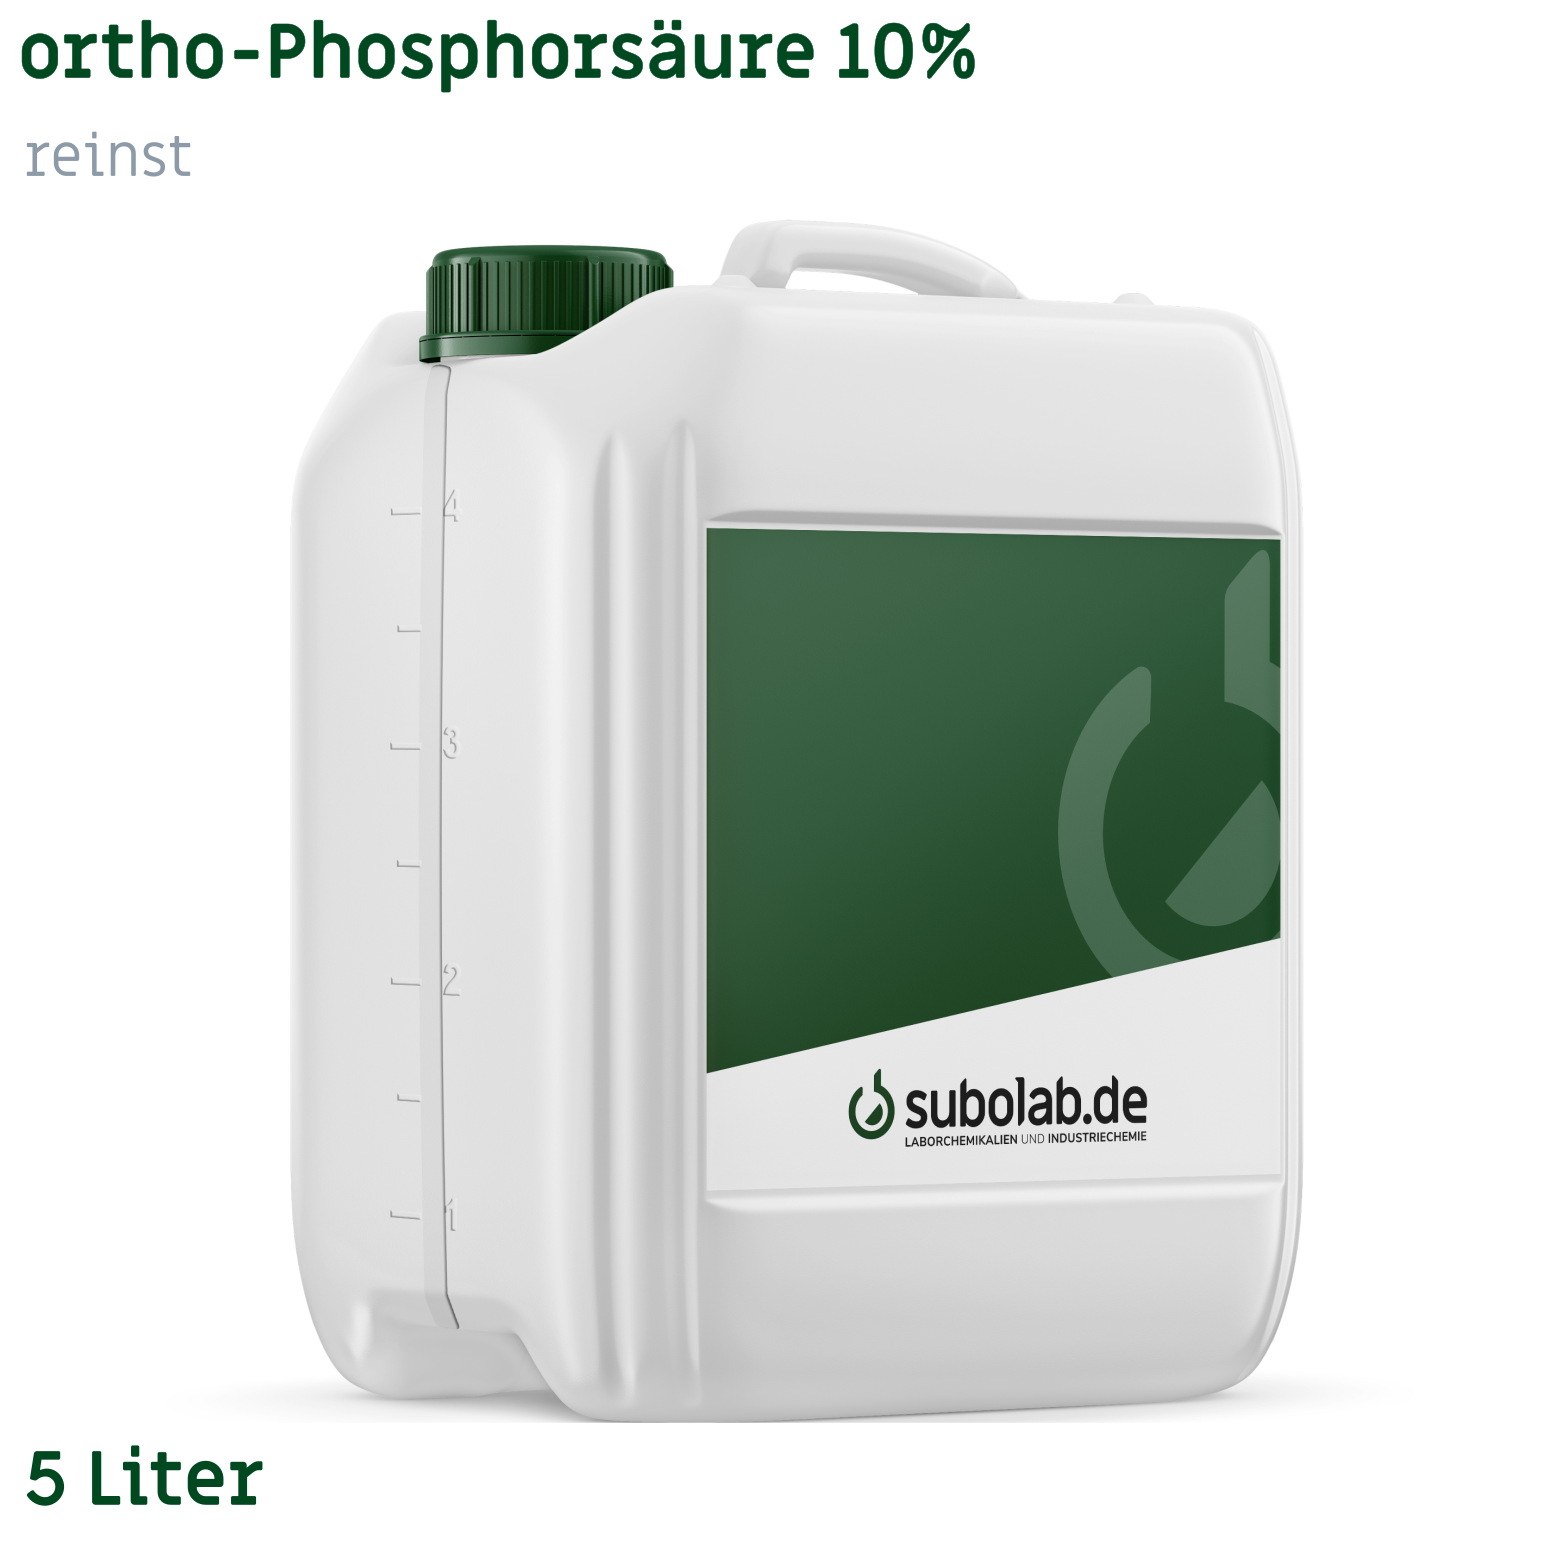 Bild von ortho-Phosphorsäure 10% reinst (5 Liter)